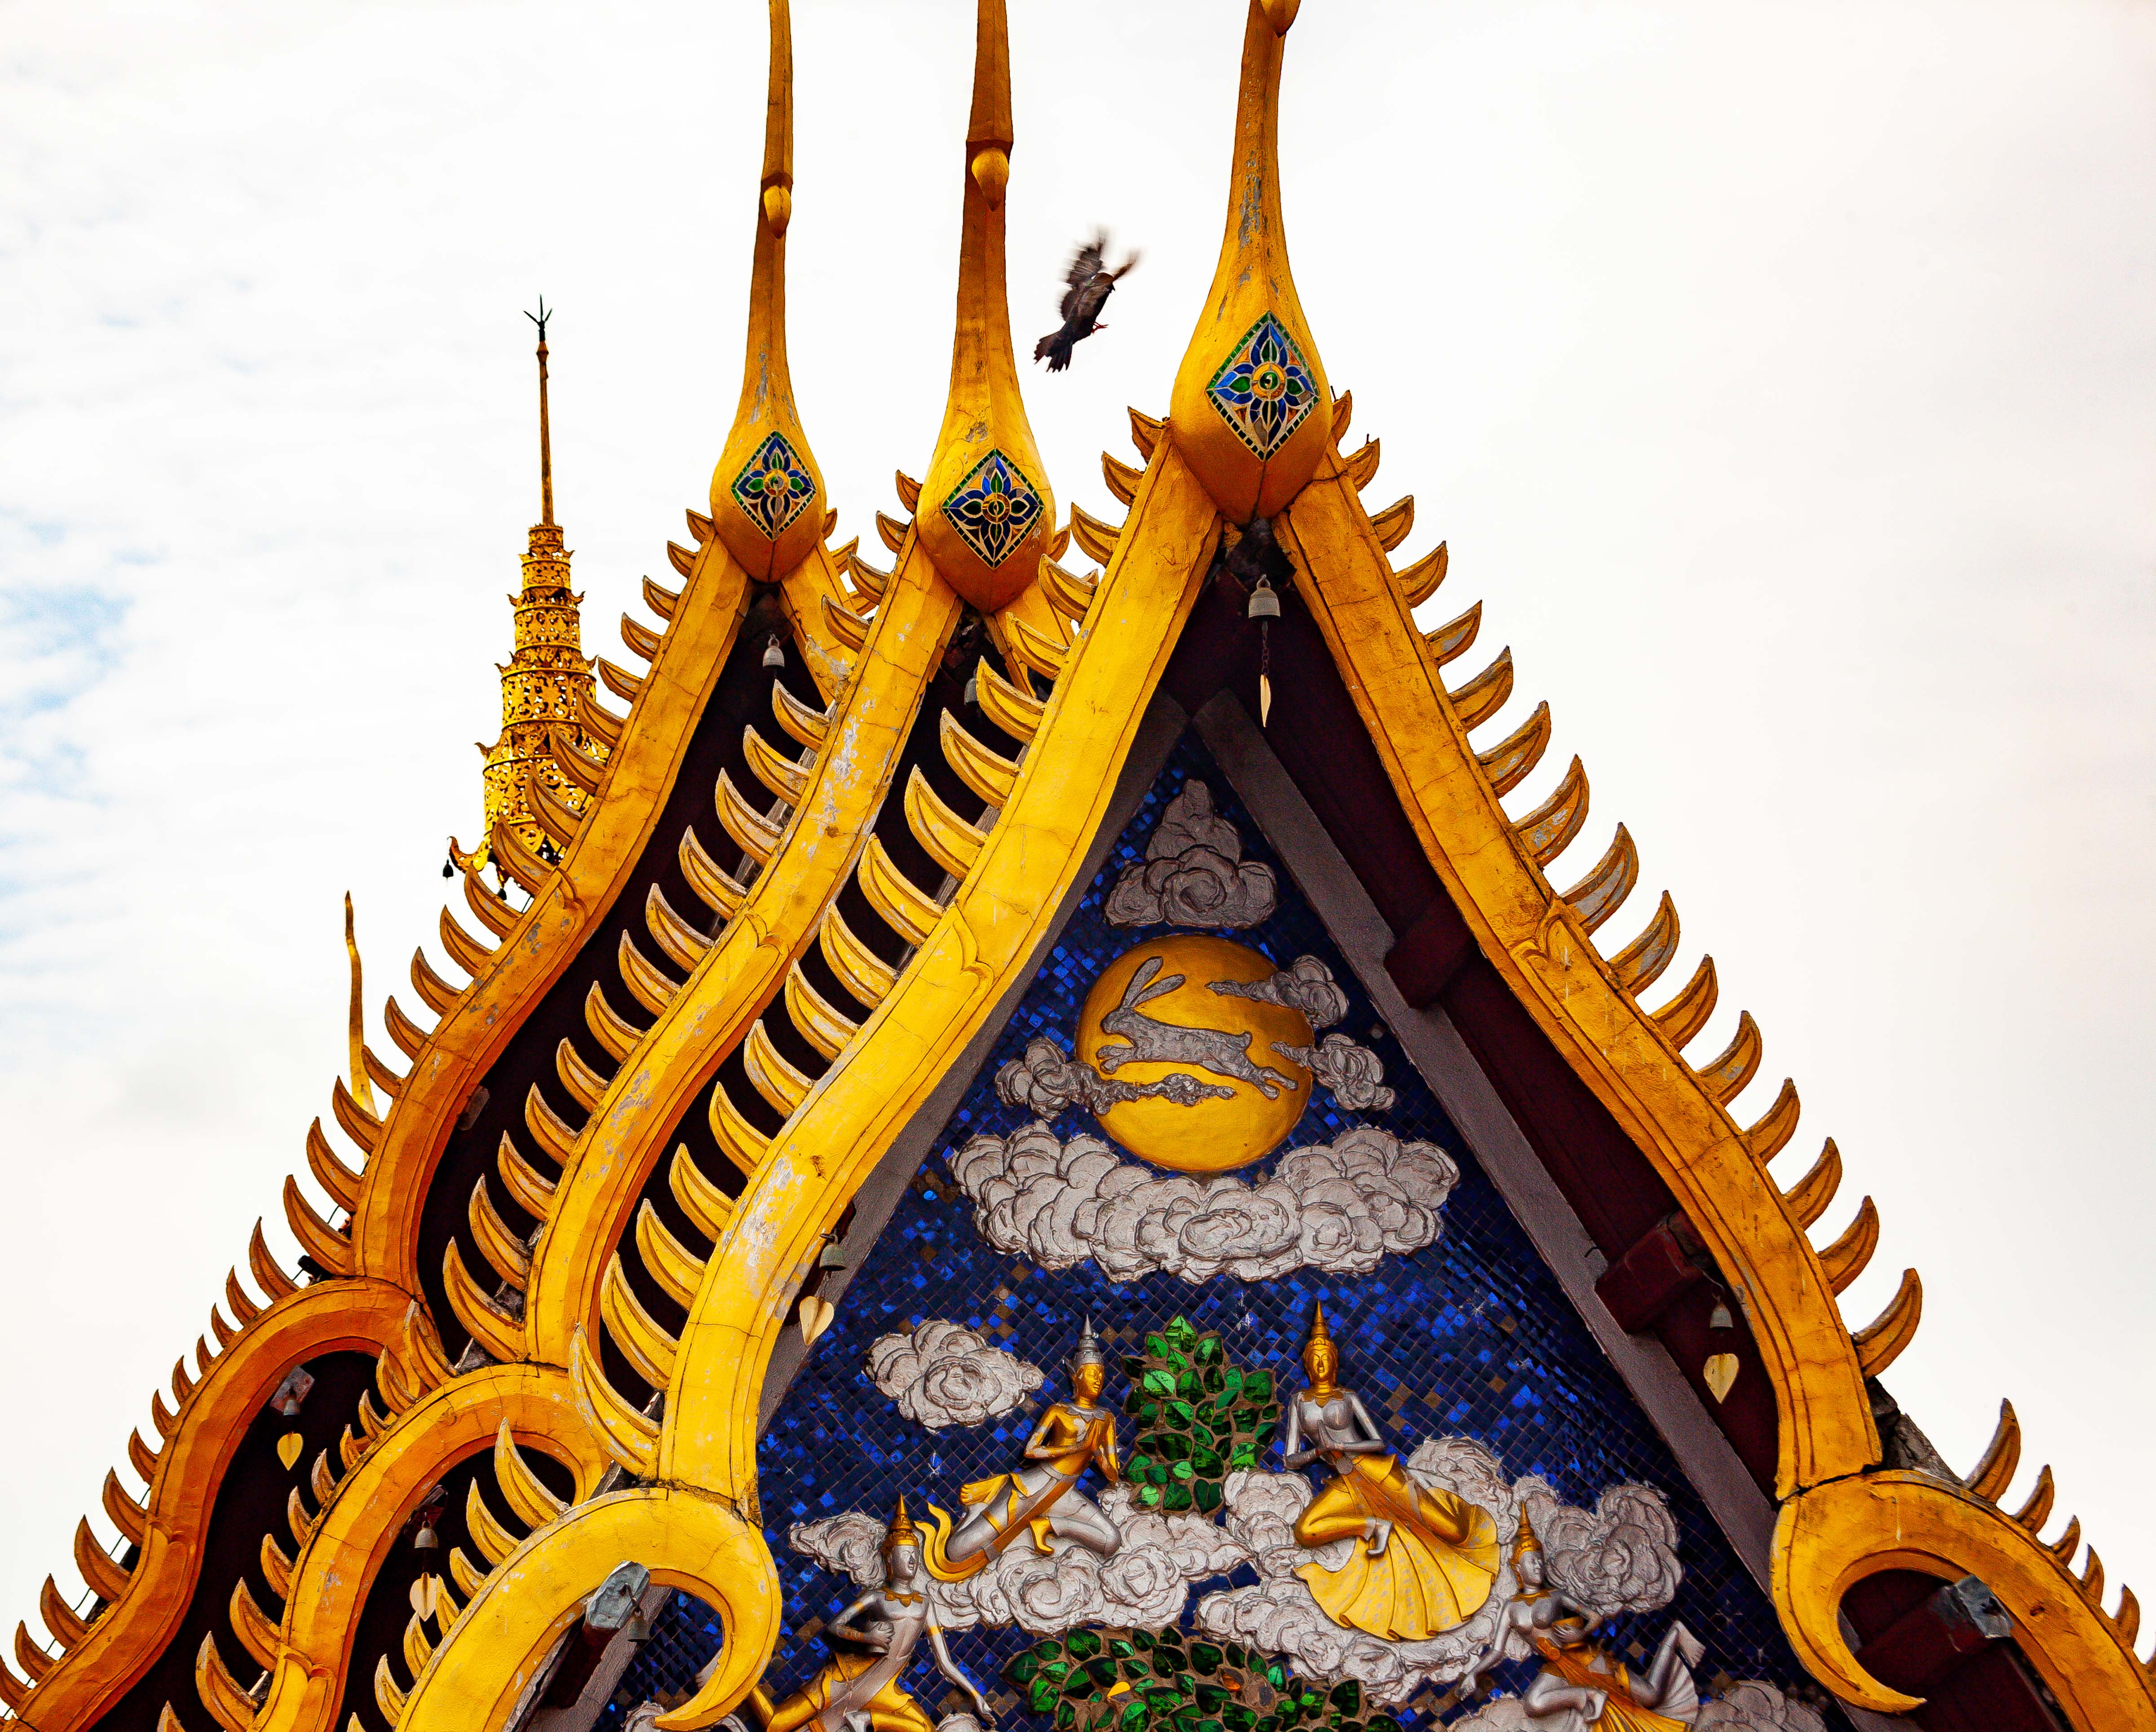 Thailand, Lampang Prov, Temple Tops, 2008, IMG 4041